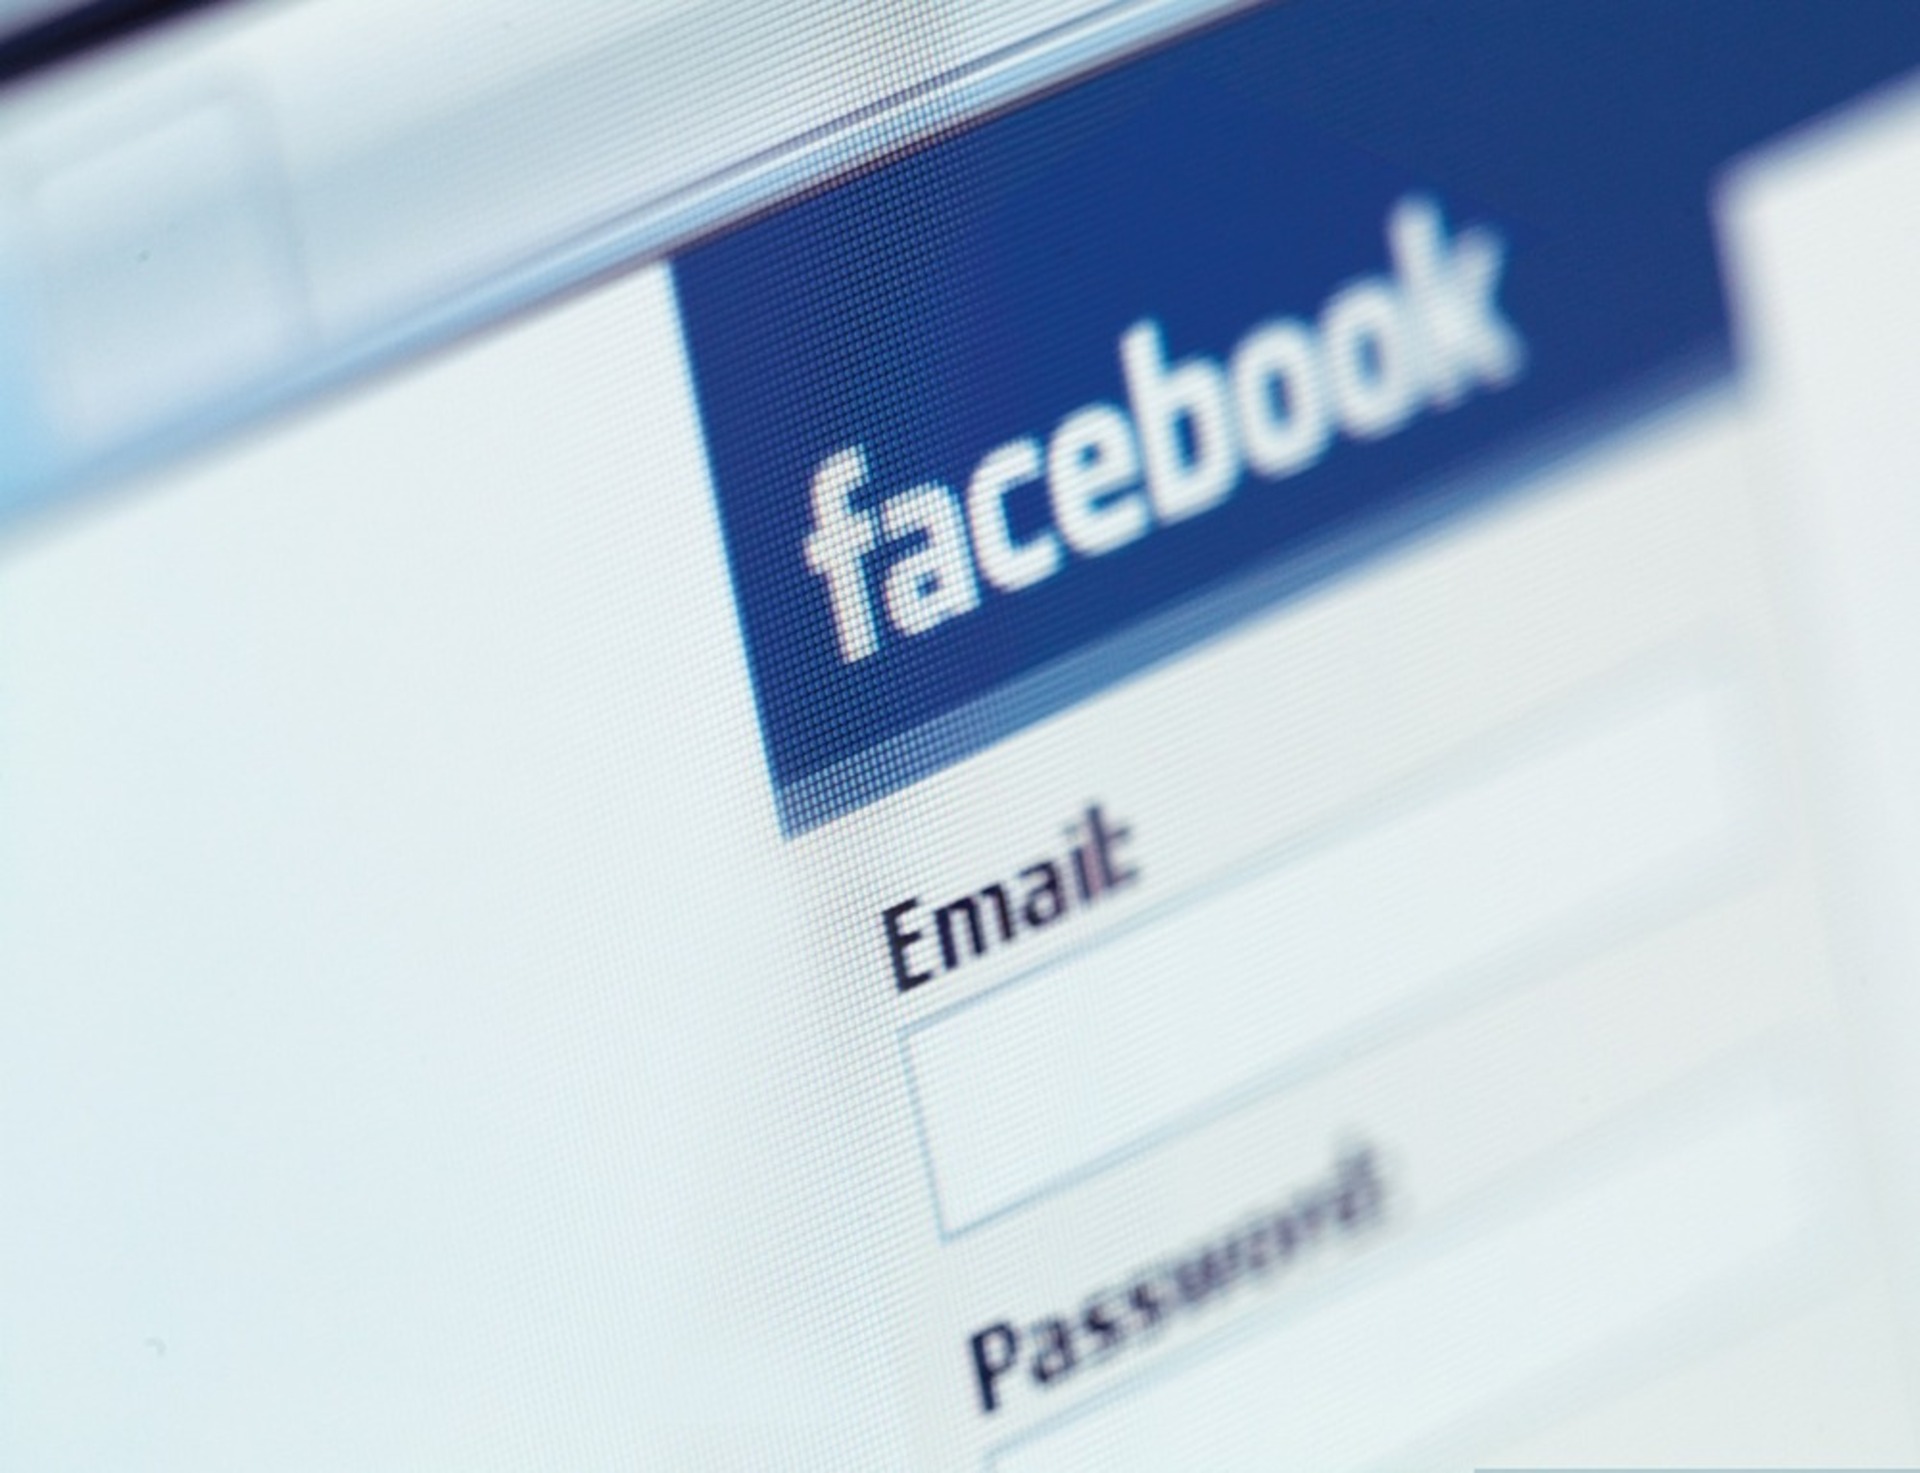 Como encontrar o e-mail de alguém no Facebook?